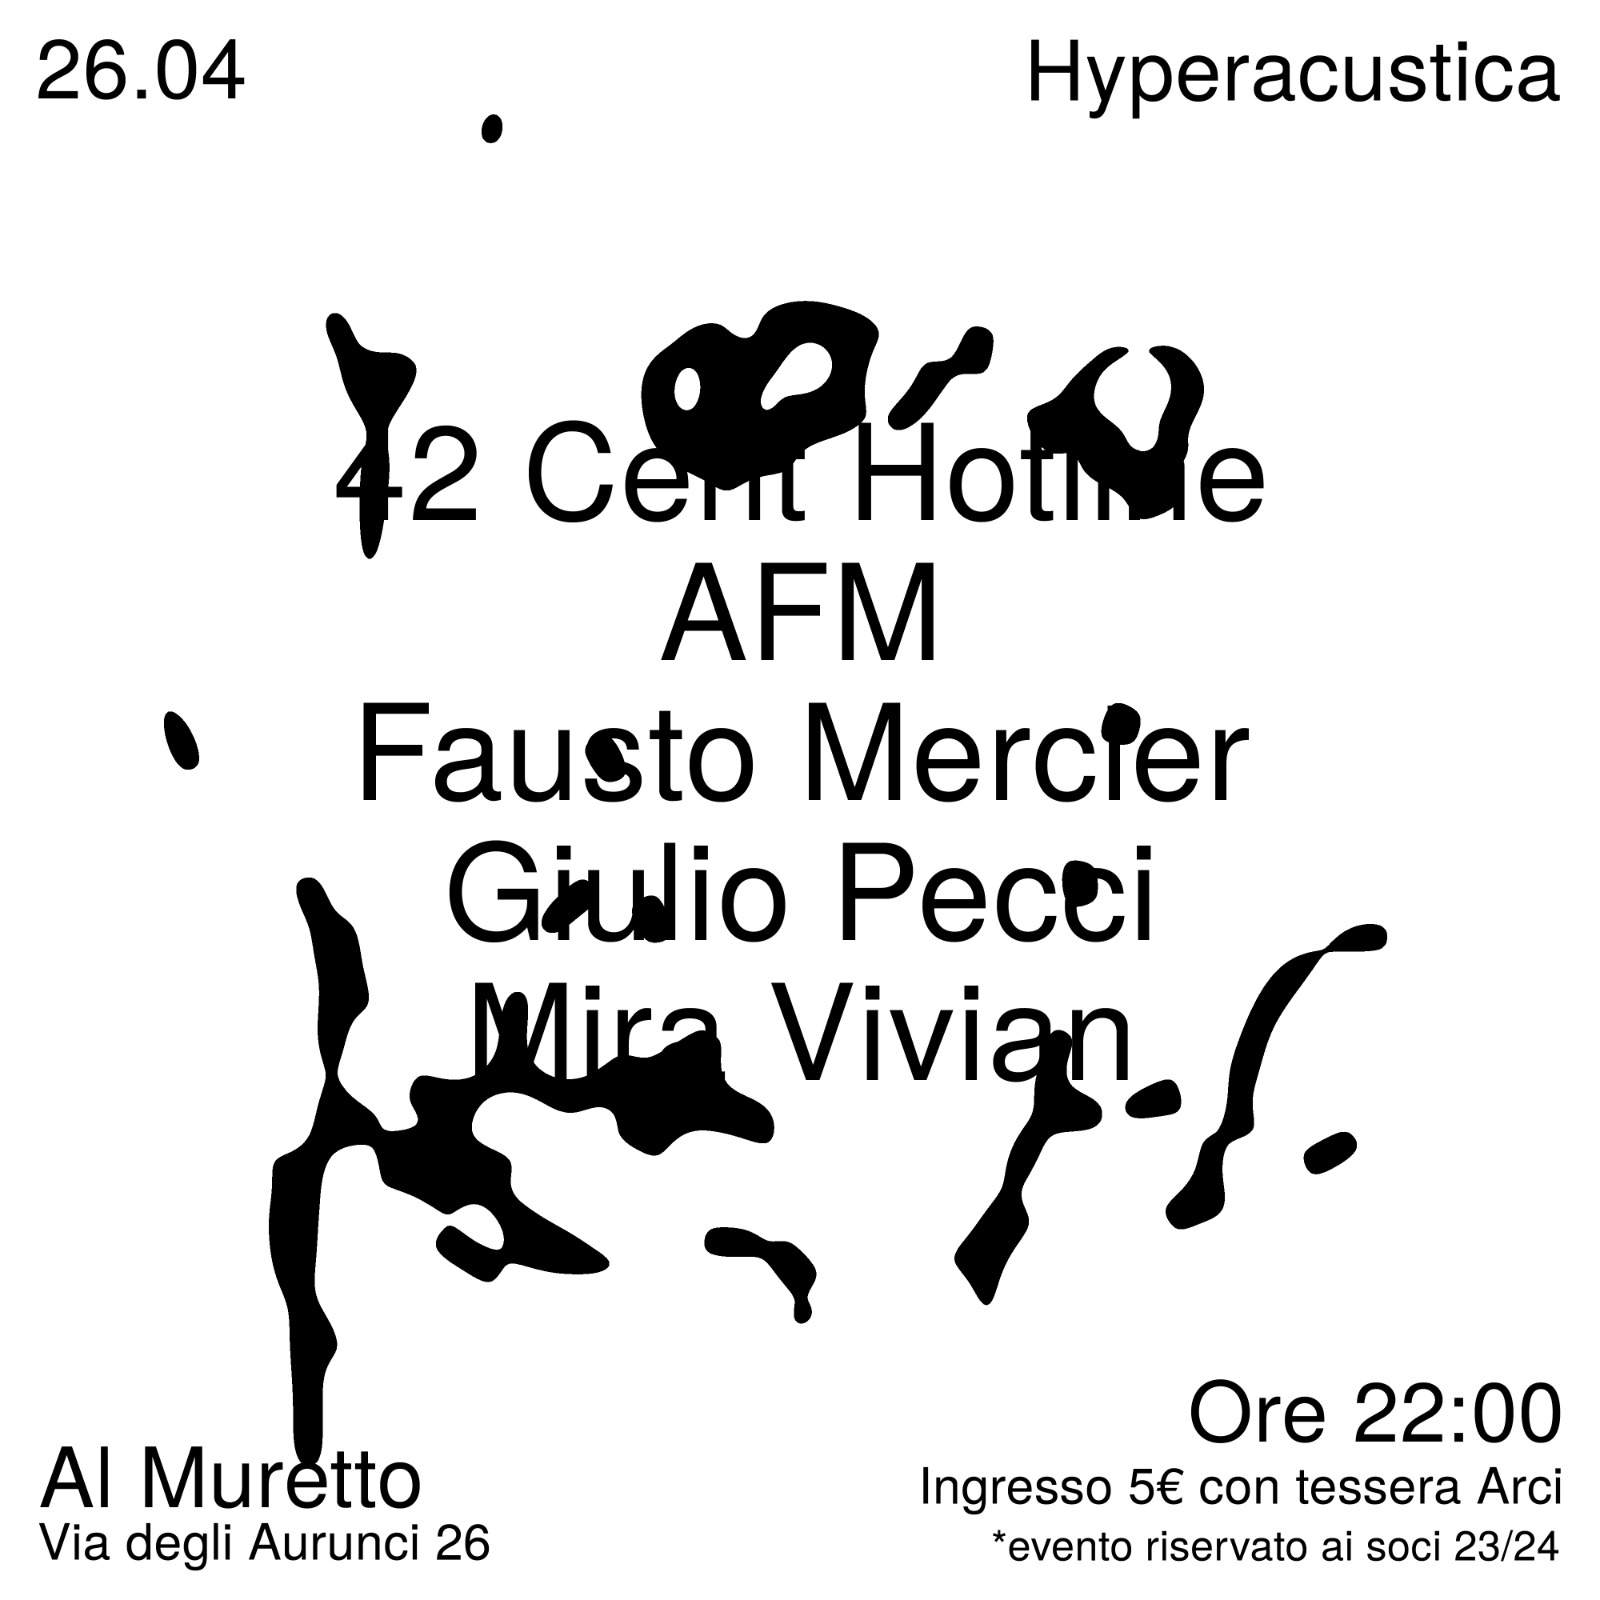 Hyperacustica presents: Fausto Mercier - Página frontal